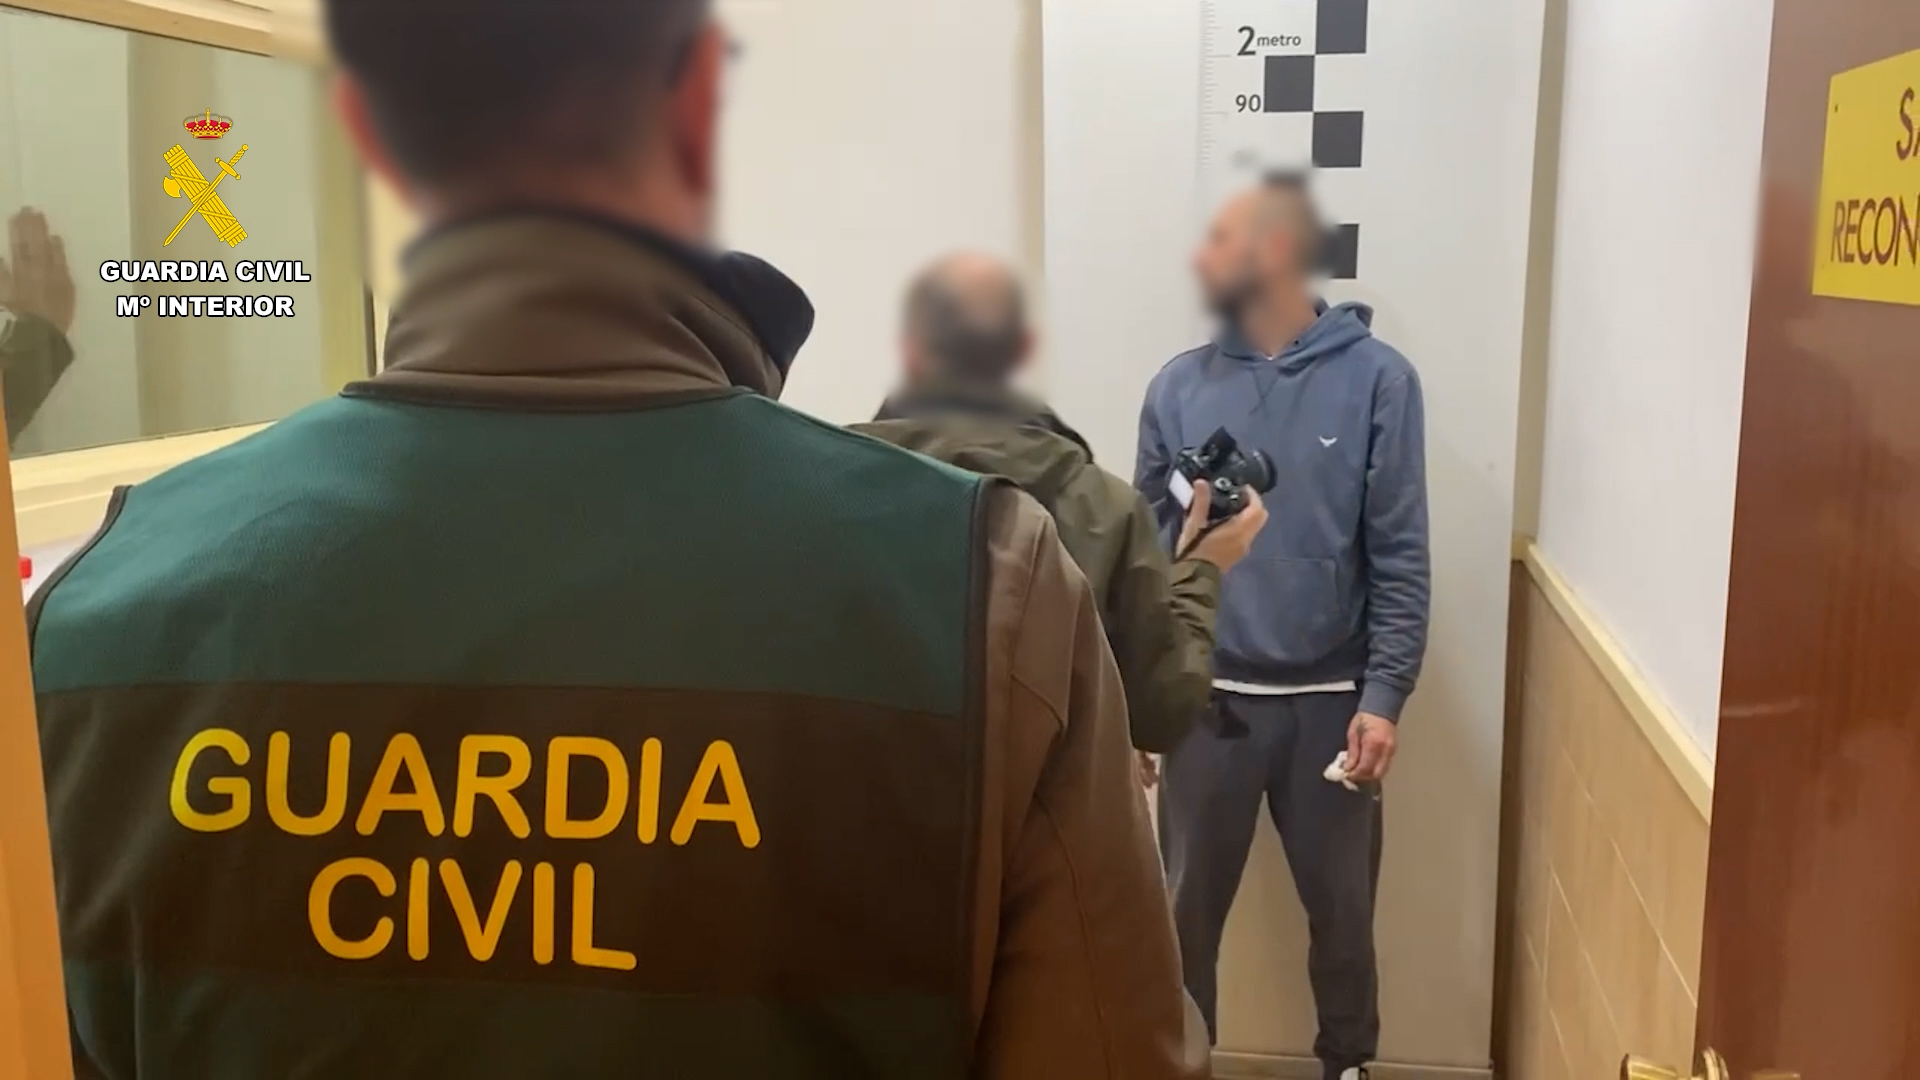 La Guardia Civil detiene en Girona a un peligroso huido de la justicia de Rumanía incluido en la lista “Europe´s Most Wanted”